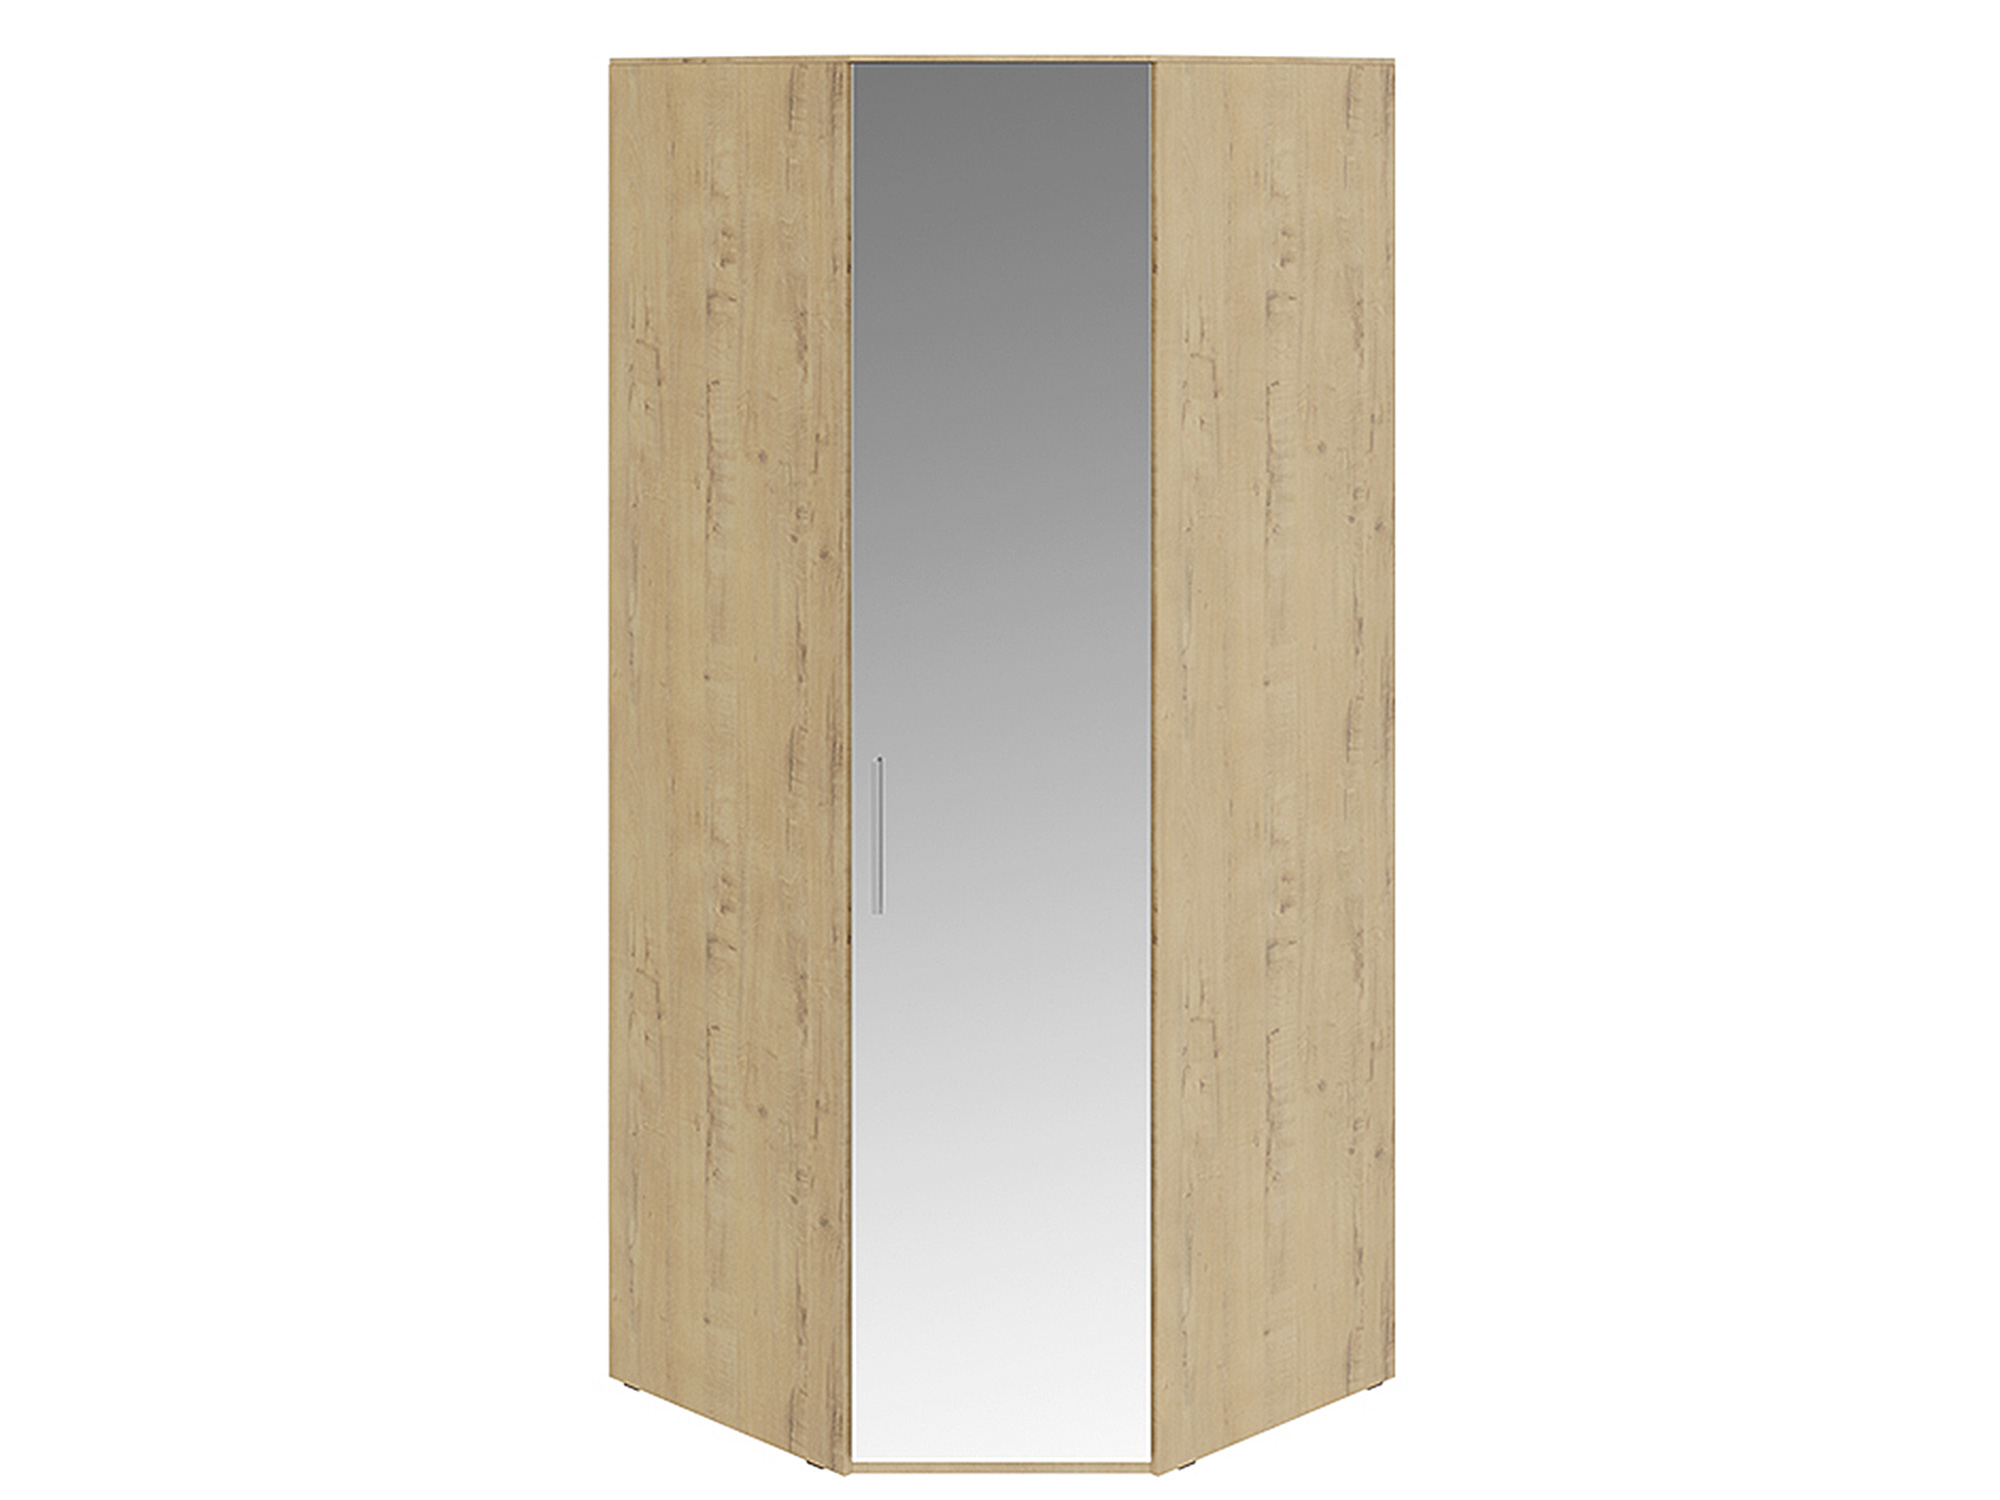 Шкаф угловой с 1 зеркальной дверью правый Николь Зеркало, , Бежевый, МДФ, ЛДСП шкаф угловой с 1 зеркальной дверью либерти коричневый лдсп зеркало